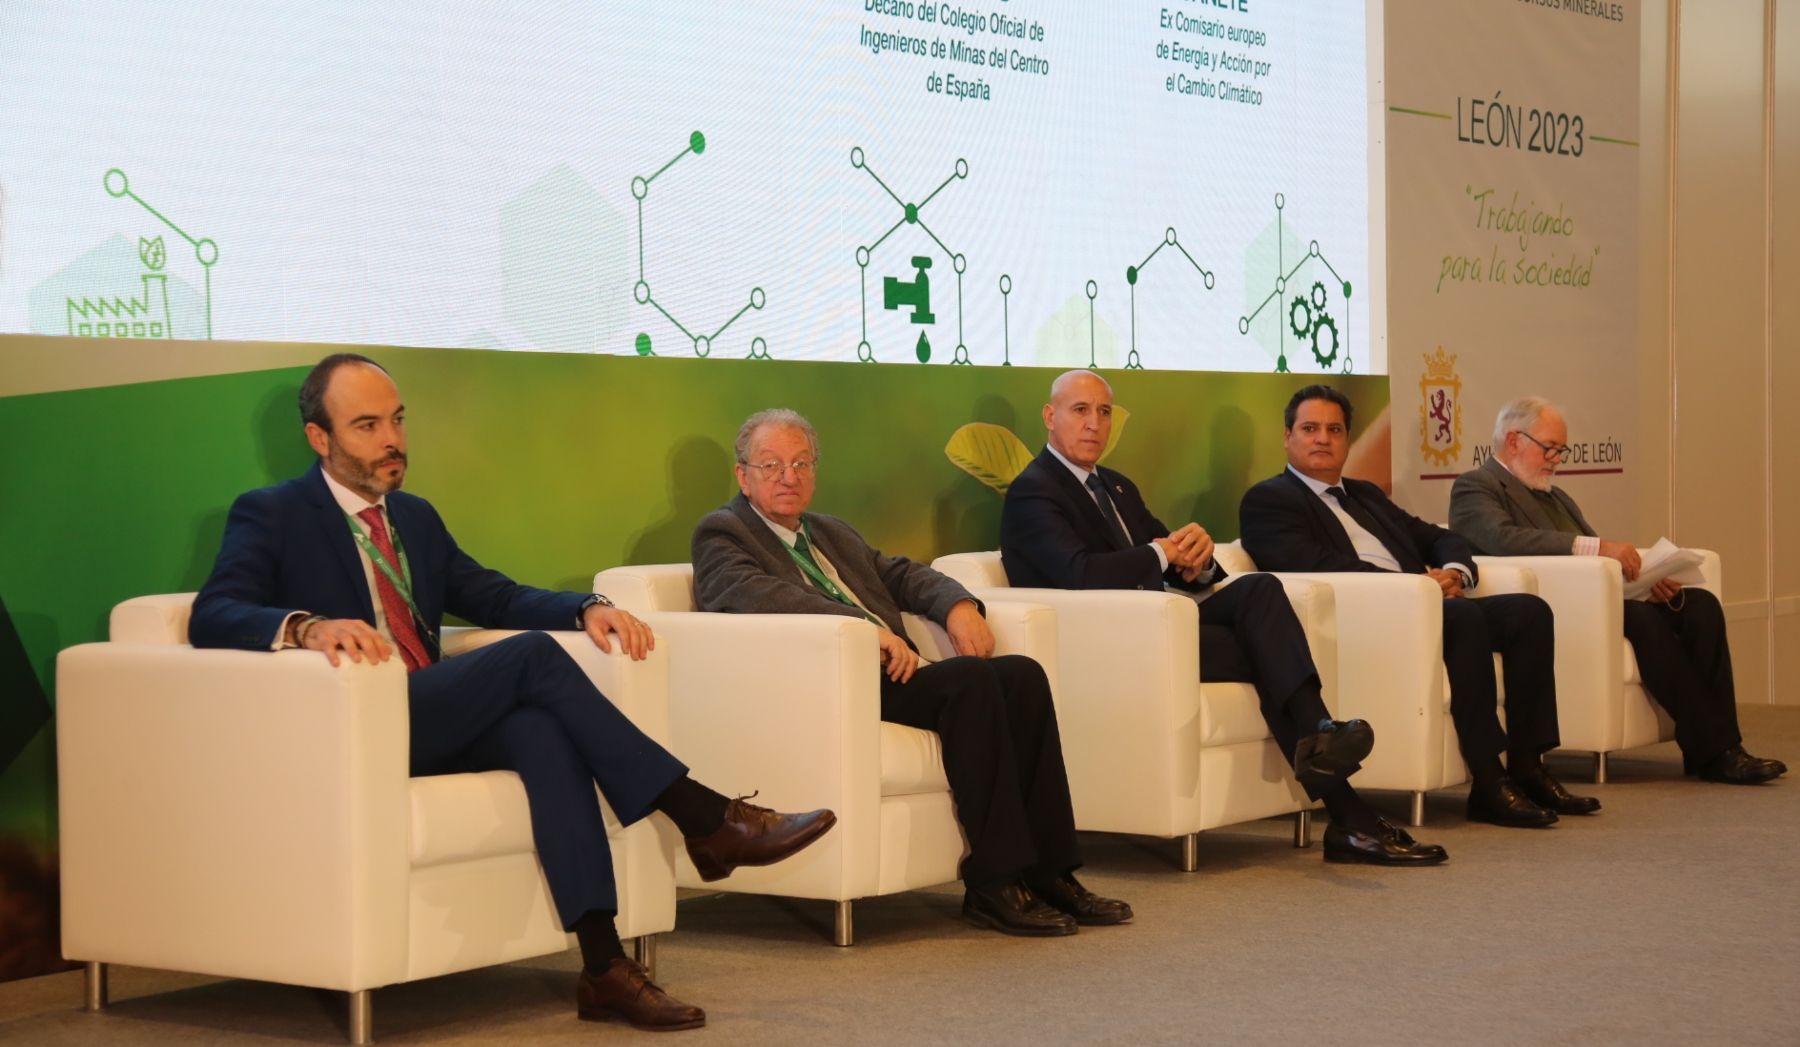 El XV Congreso Internacional de Energía y Minas fue inaugurado con la presencia del alcalde de León, José Antonio Diez